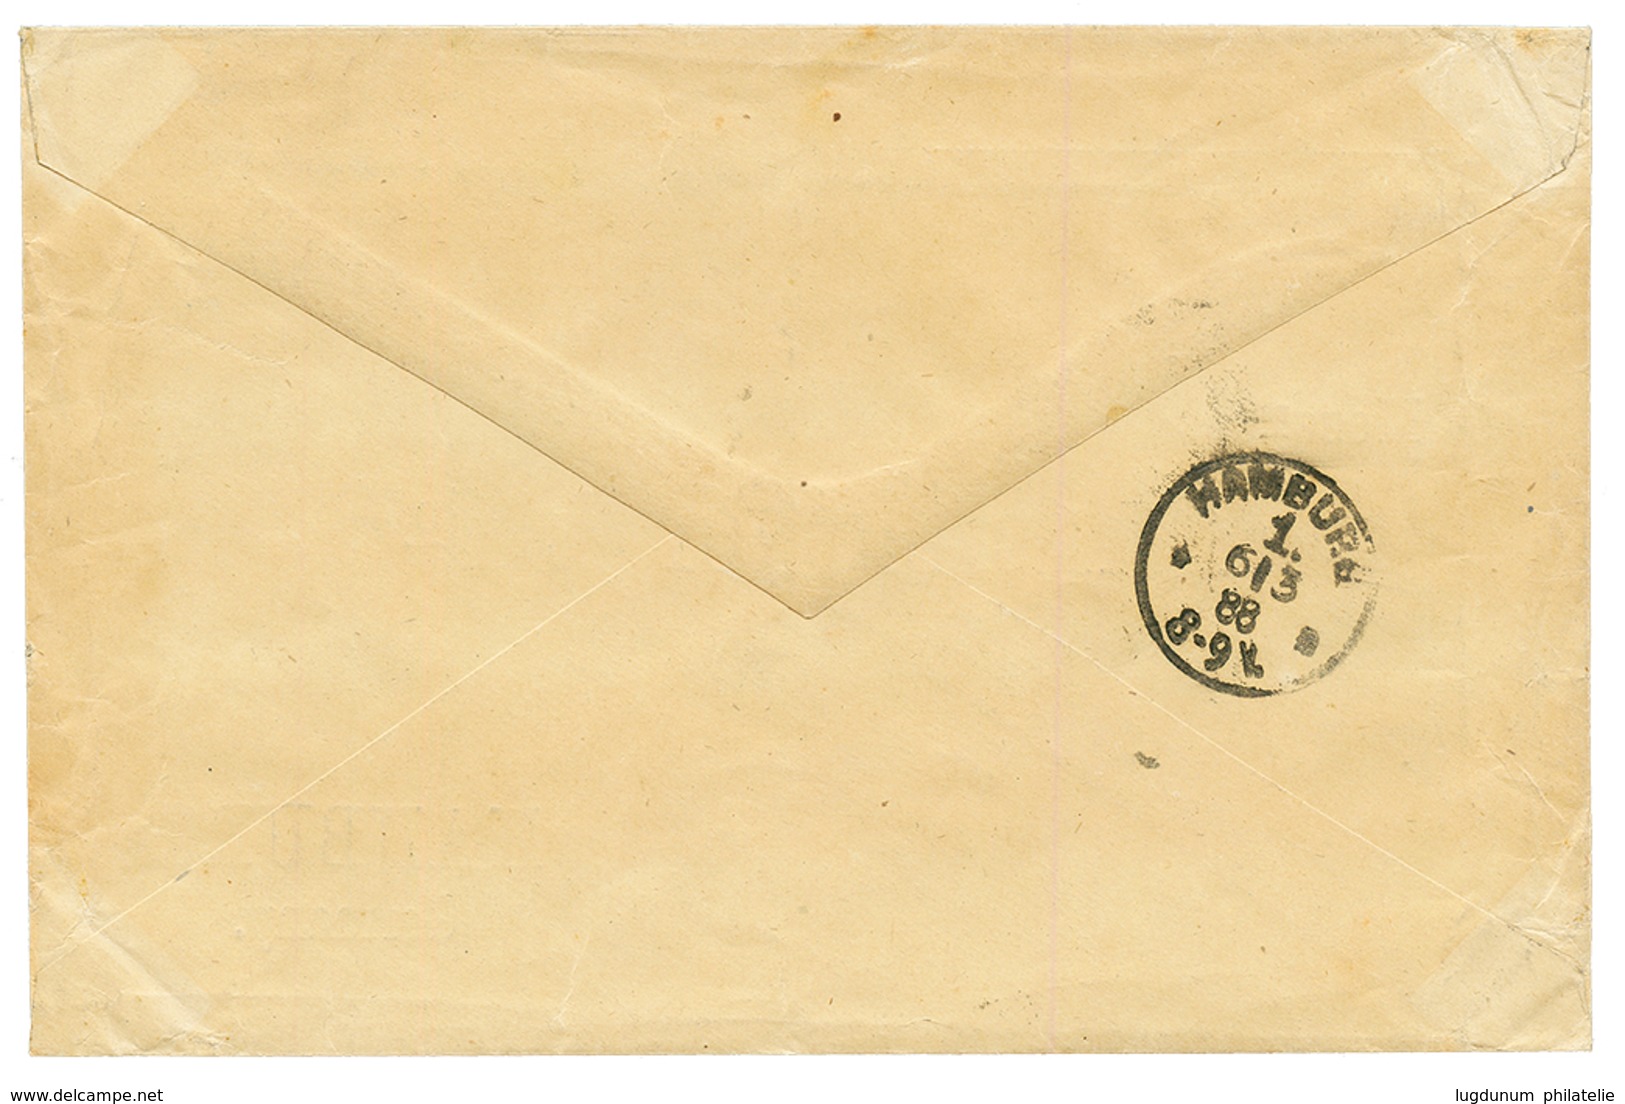 HAITI : 1888 3c + 7c+ 20c Canc. JACMEL On Envelope To GERMANY. Ex. SABATTINI. Vf. - Haiti